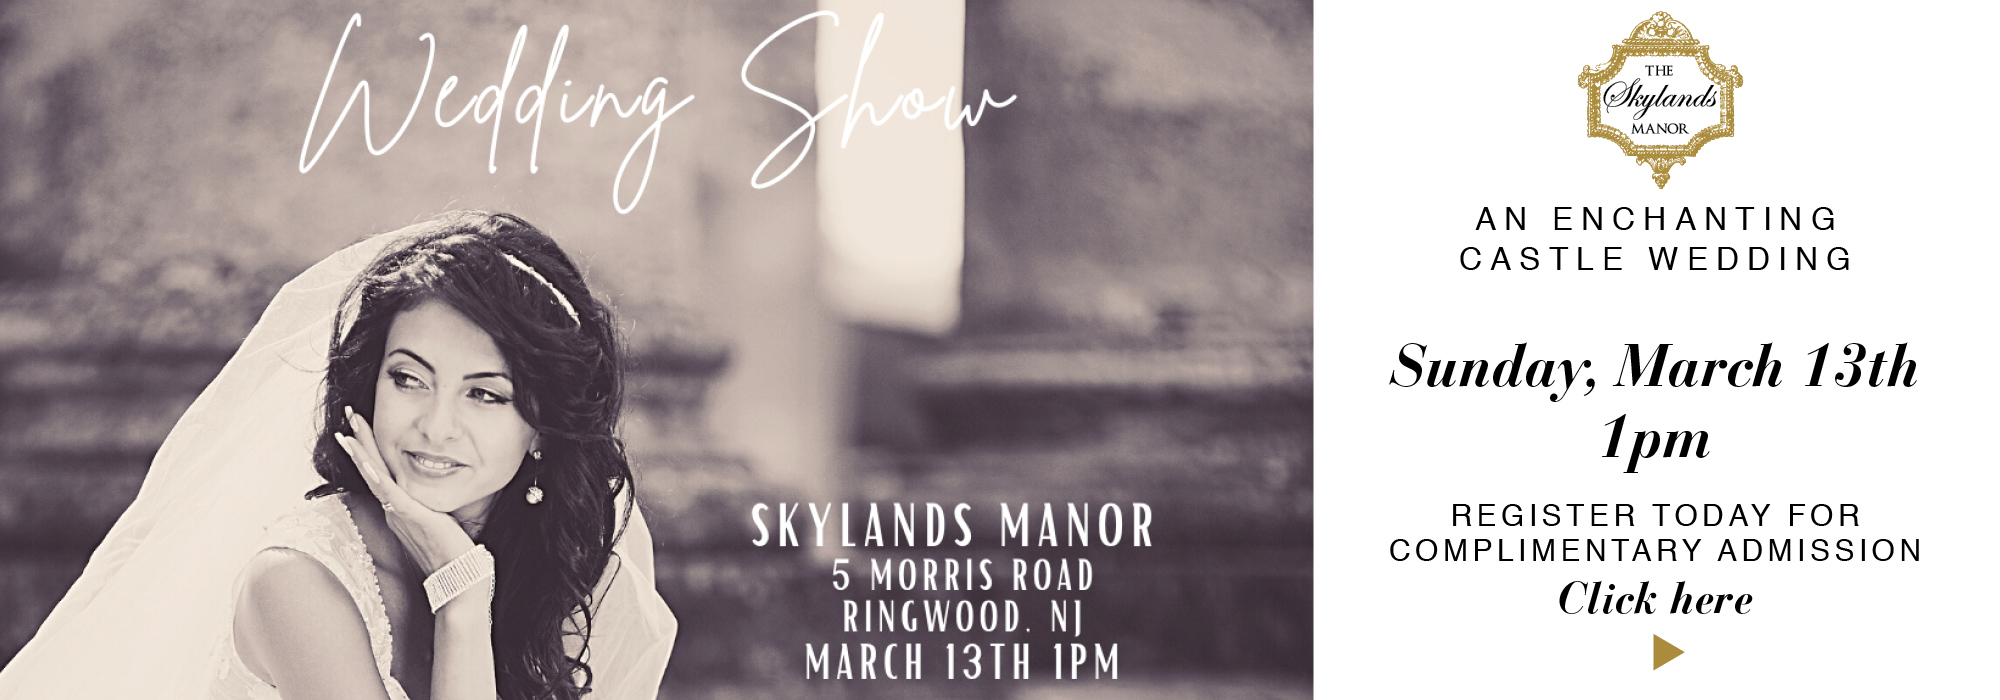 Skylands Manor Wedding Show